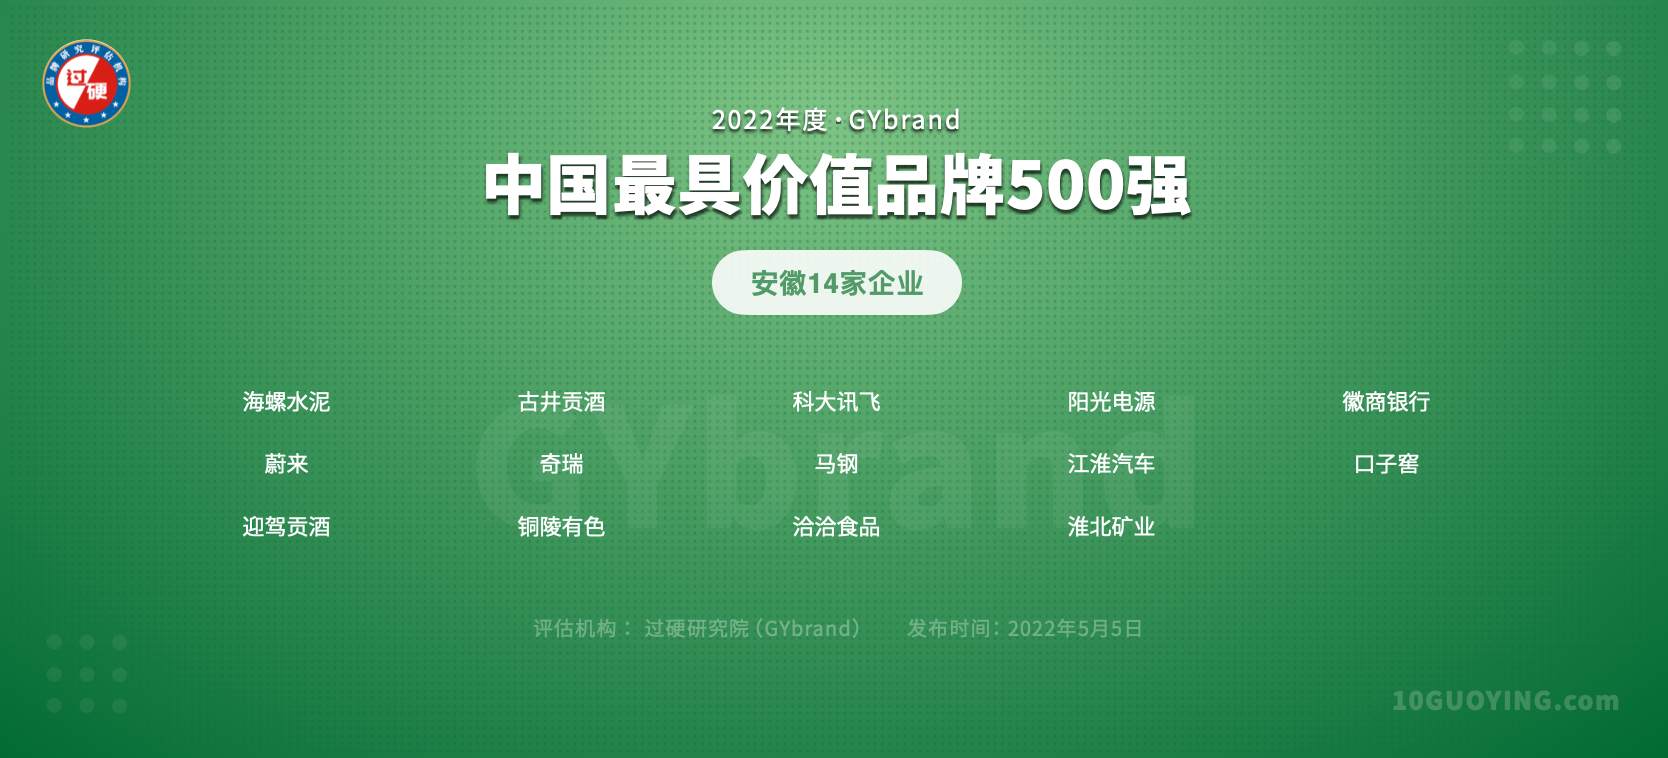 2022中国品牌价值500强安徽14家企业名单:合肥6家,芜湖2家